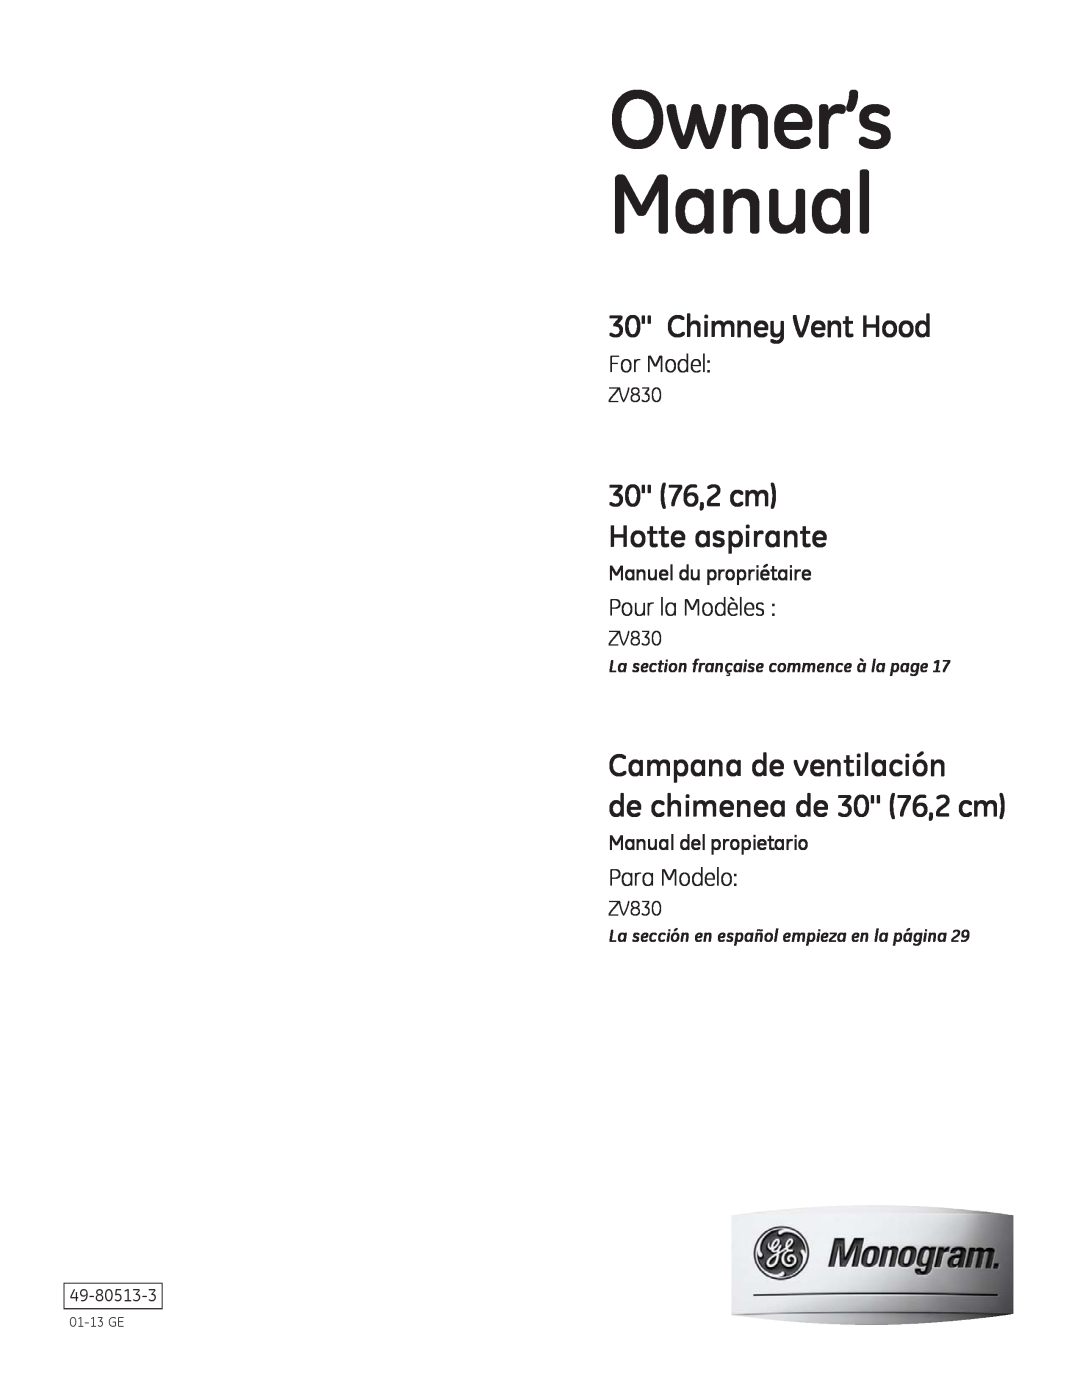 GE ZV830 owner manual Chimney Vent Hood, Campana de ventilación de chimenea de 30 76,2 cm, 30 76,2 cm Hotte aspirante 